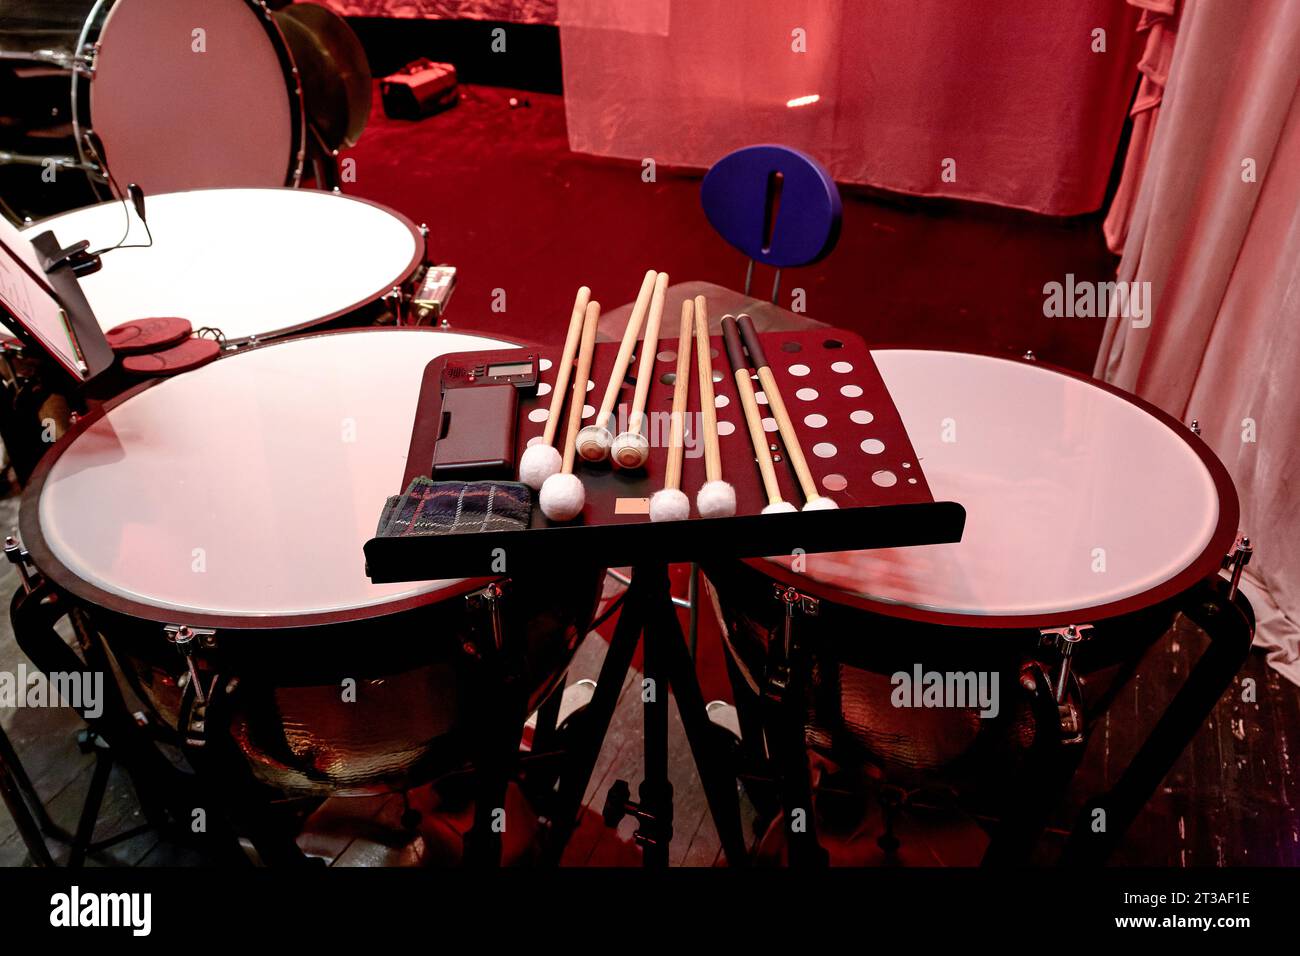 Image de tambours de timbales d'orchestre symphonique sur scène de théâtre Banque D'Images